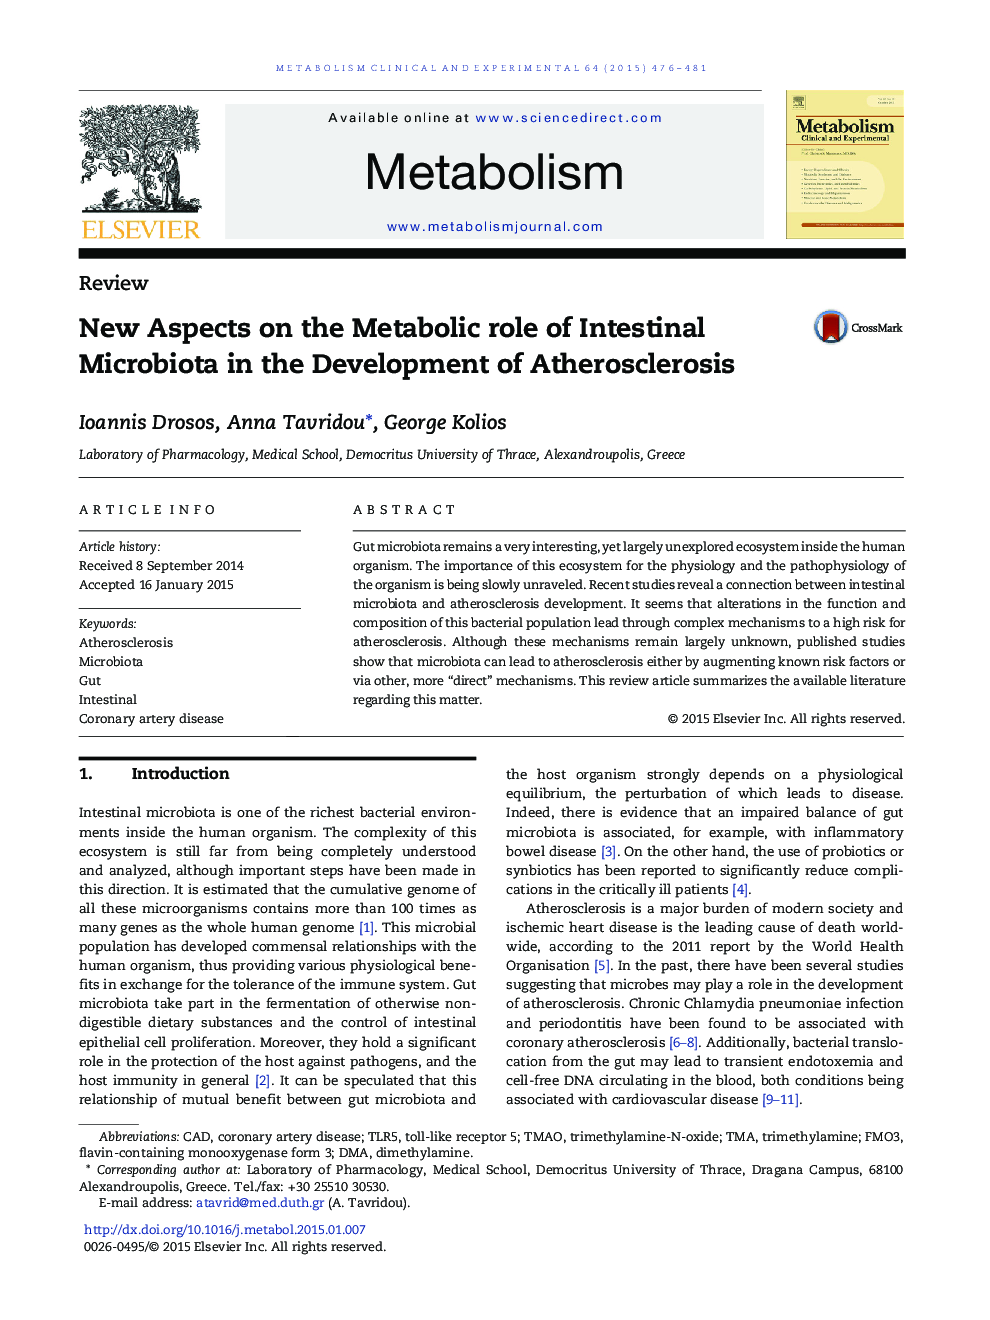 جنبه های جدید در نقش متابولیک میکروبیوتایای روده در توسعه آترواسکلروز 